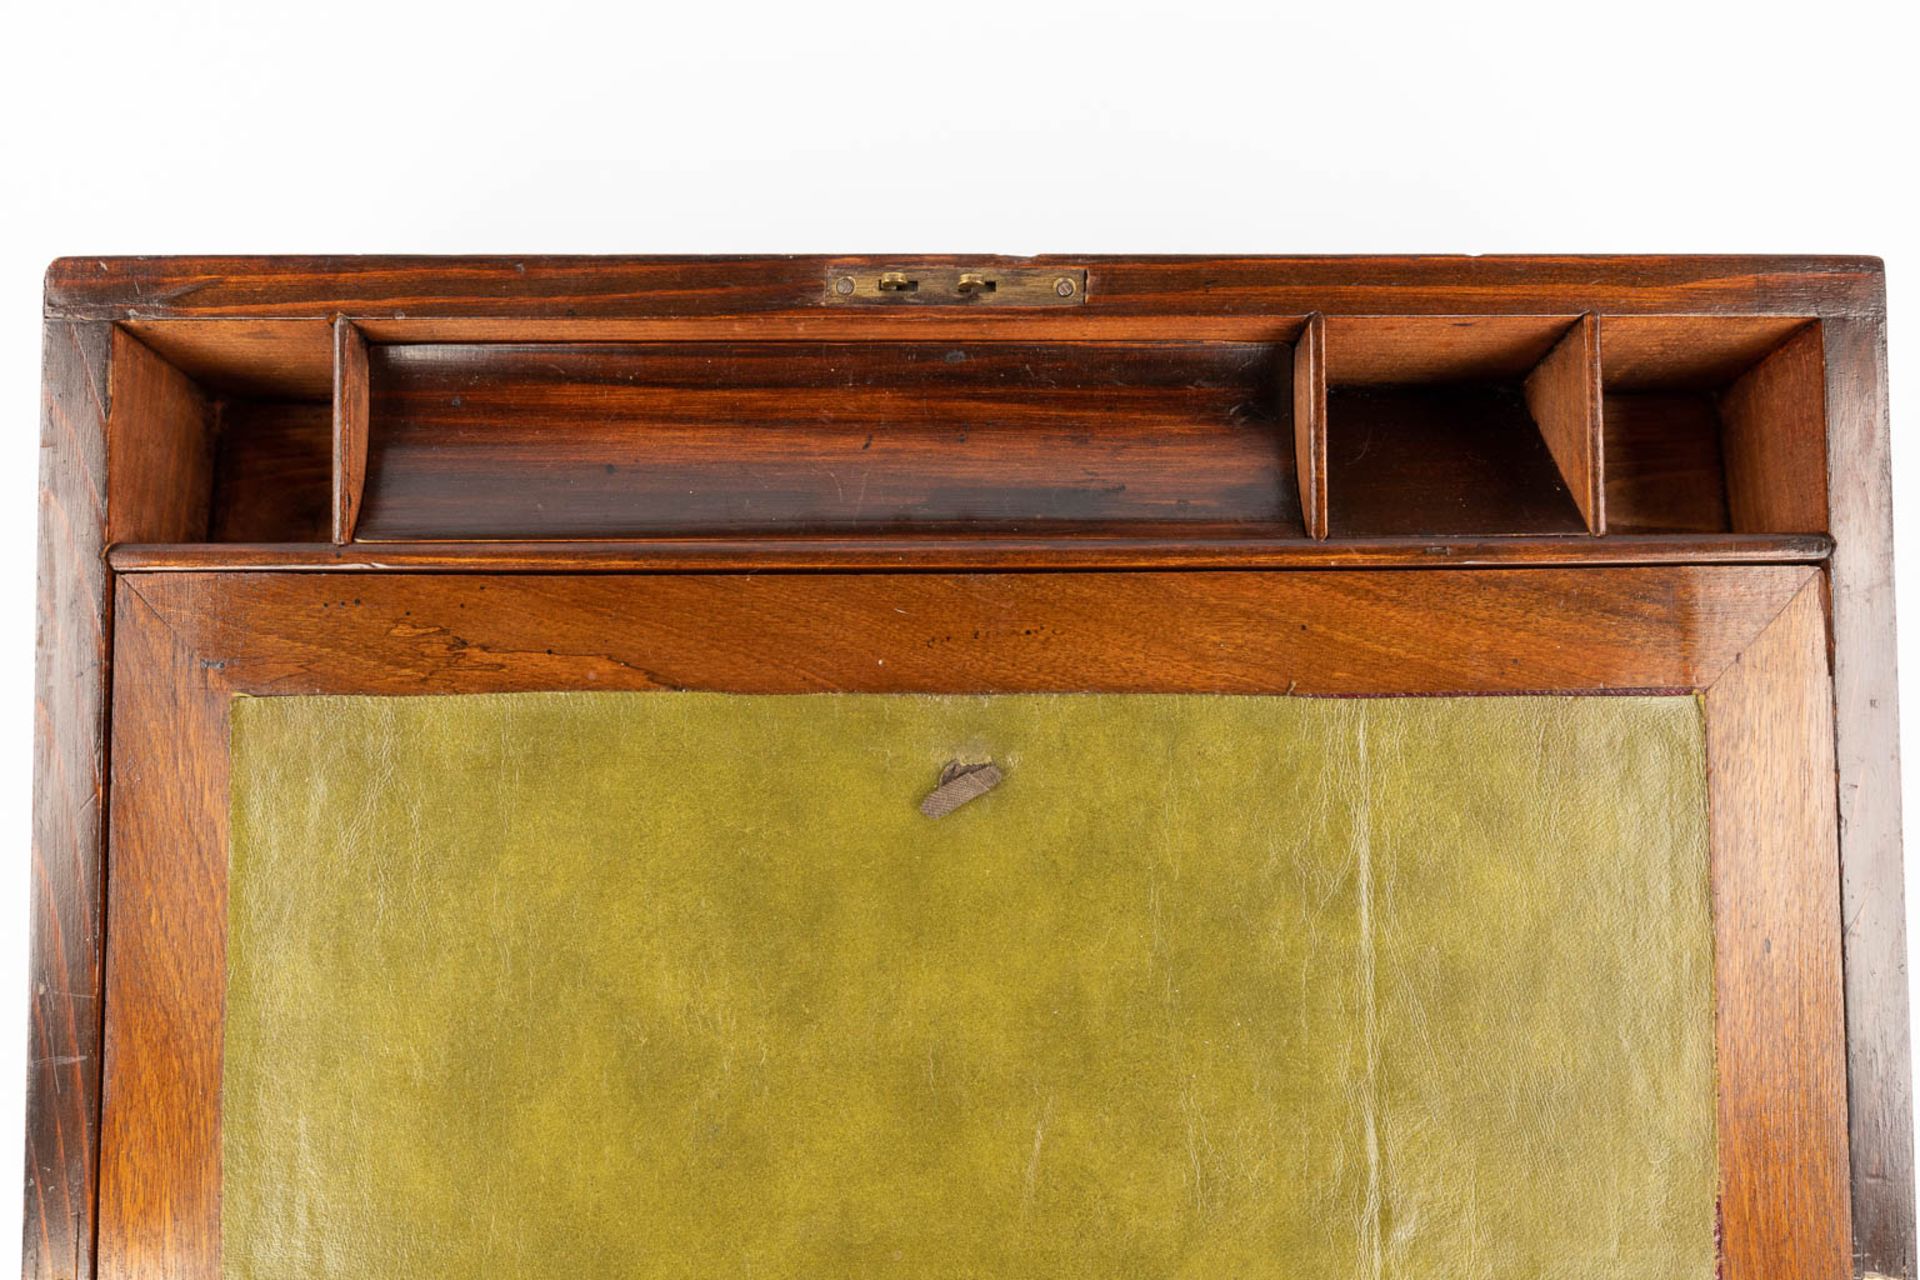 An antique slope desk. England, 19th C. (L:24 x W:40 x H:16 cm) - Image 10 of 14